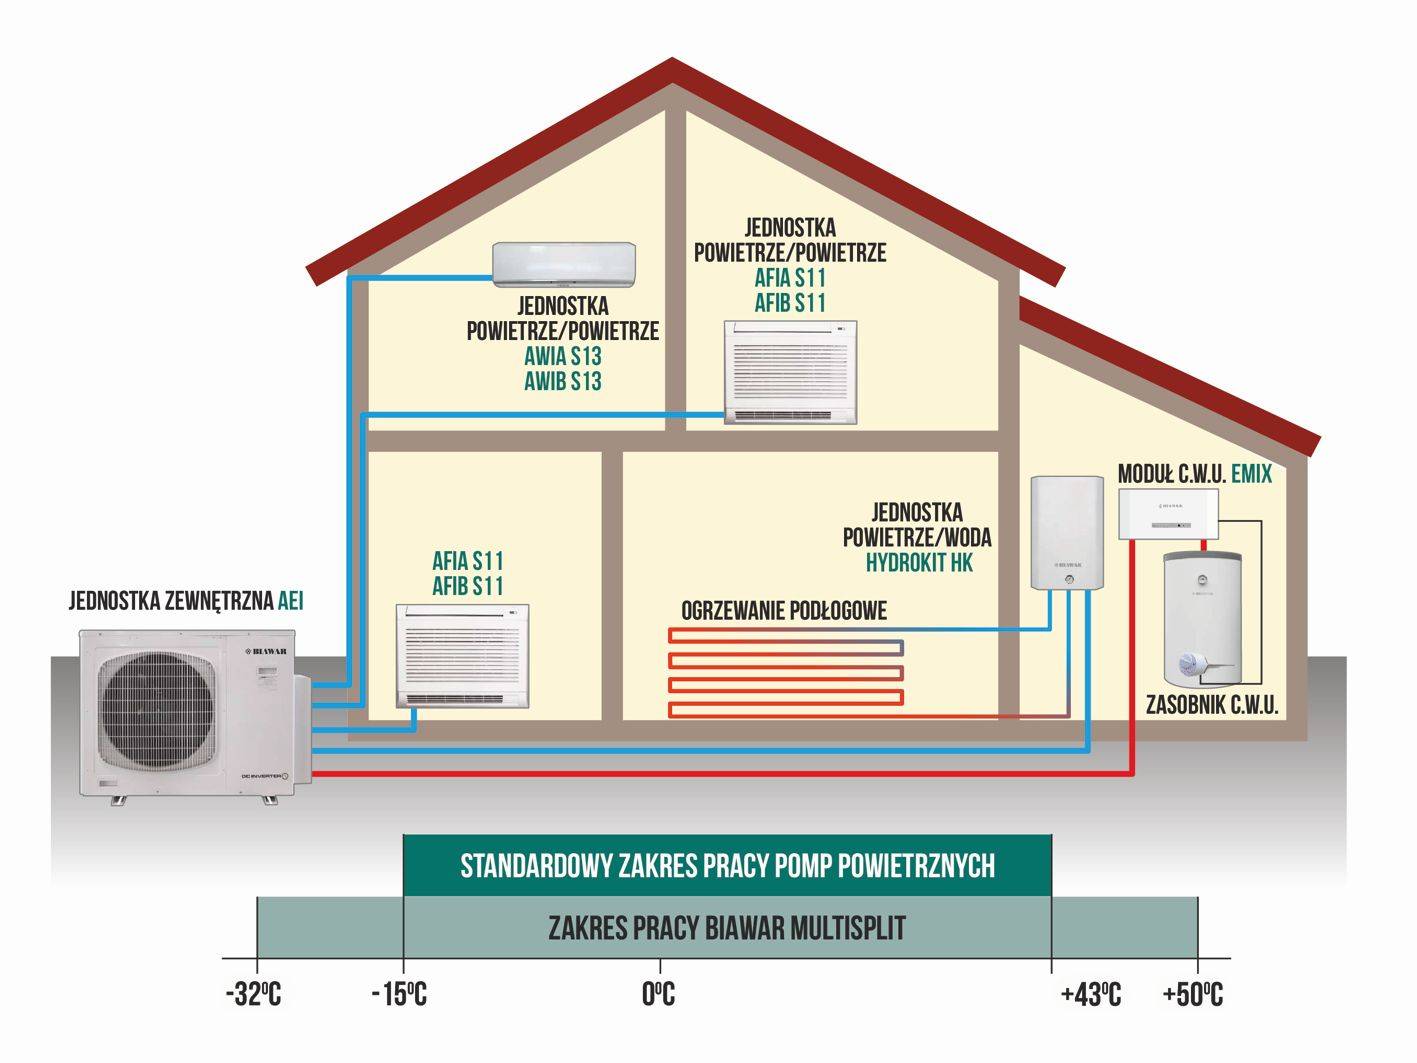 Определение расхода газа и электроэнергии на отопление дома, расчет мощности системы